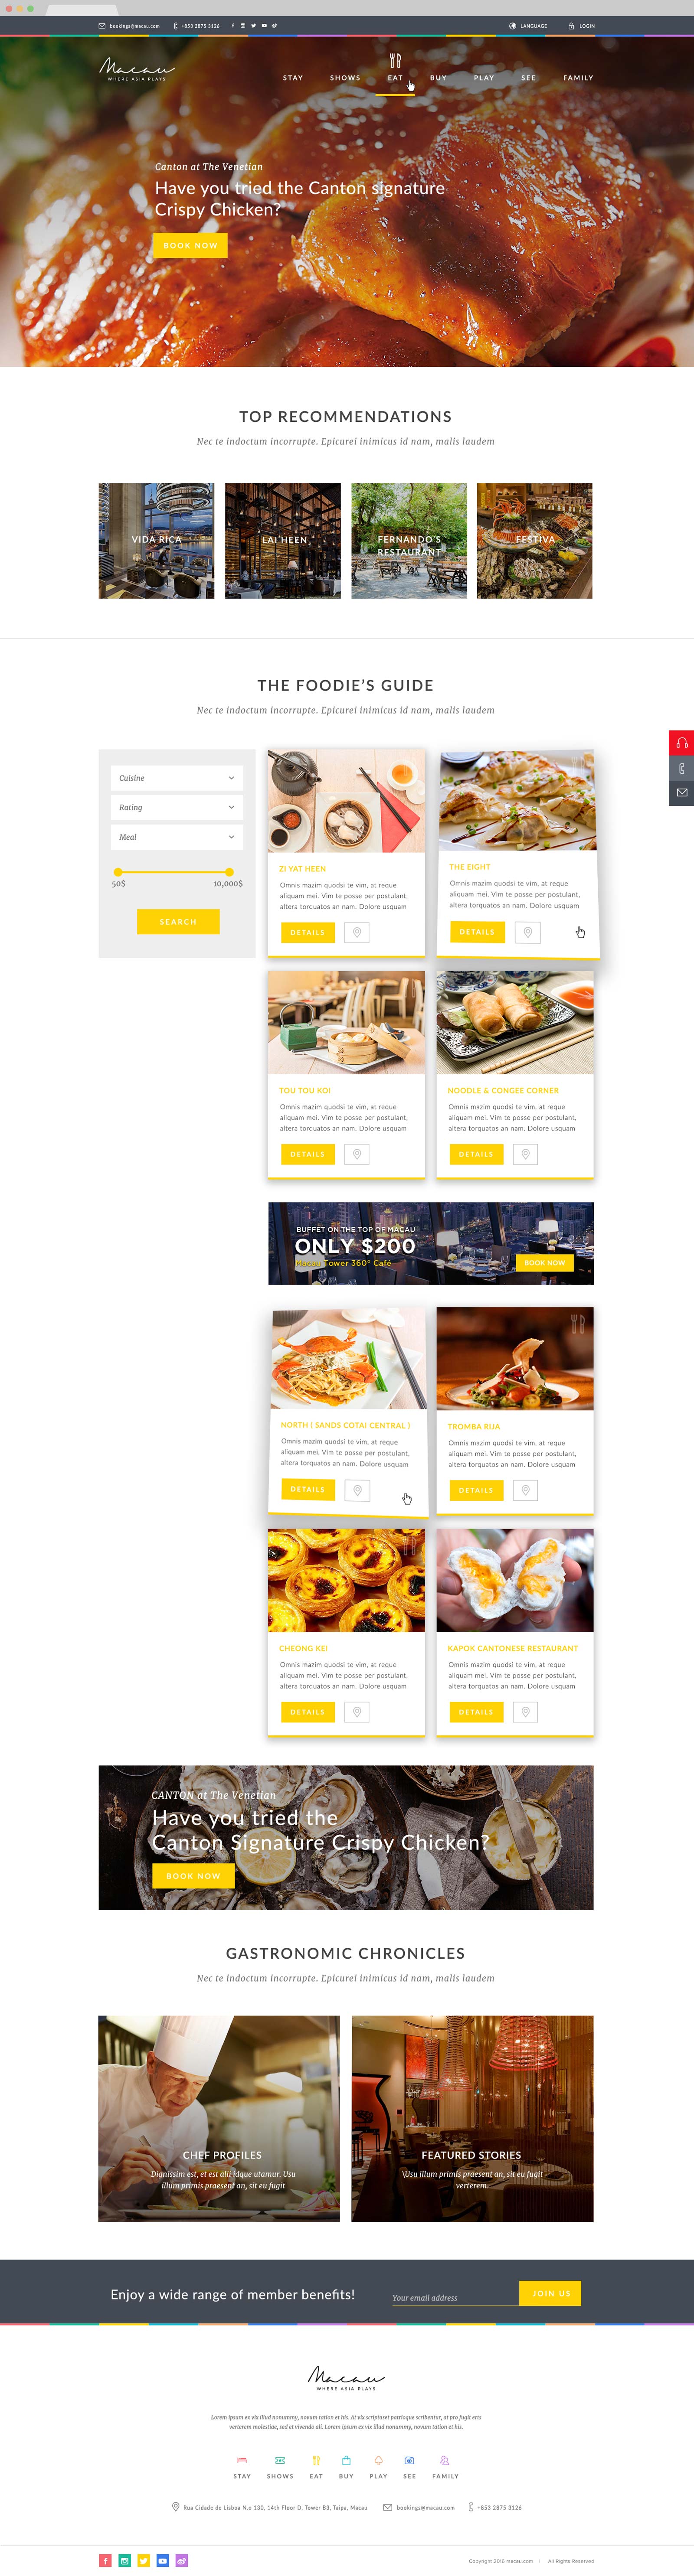 web design singapore macau.com 01 - Macau.com